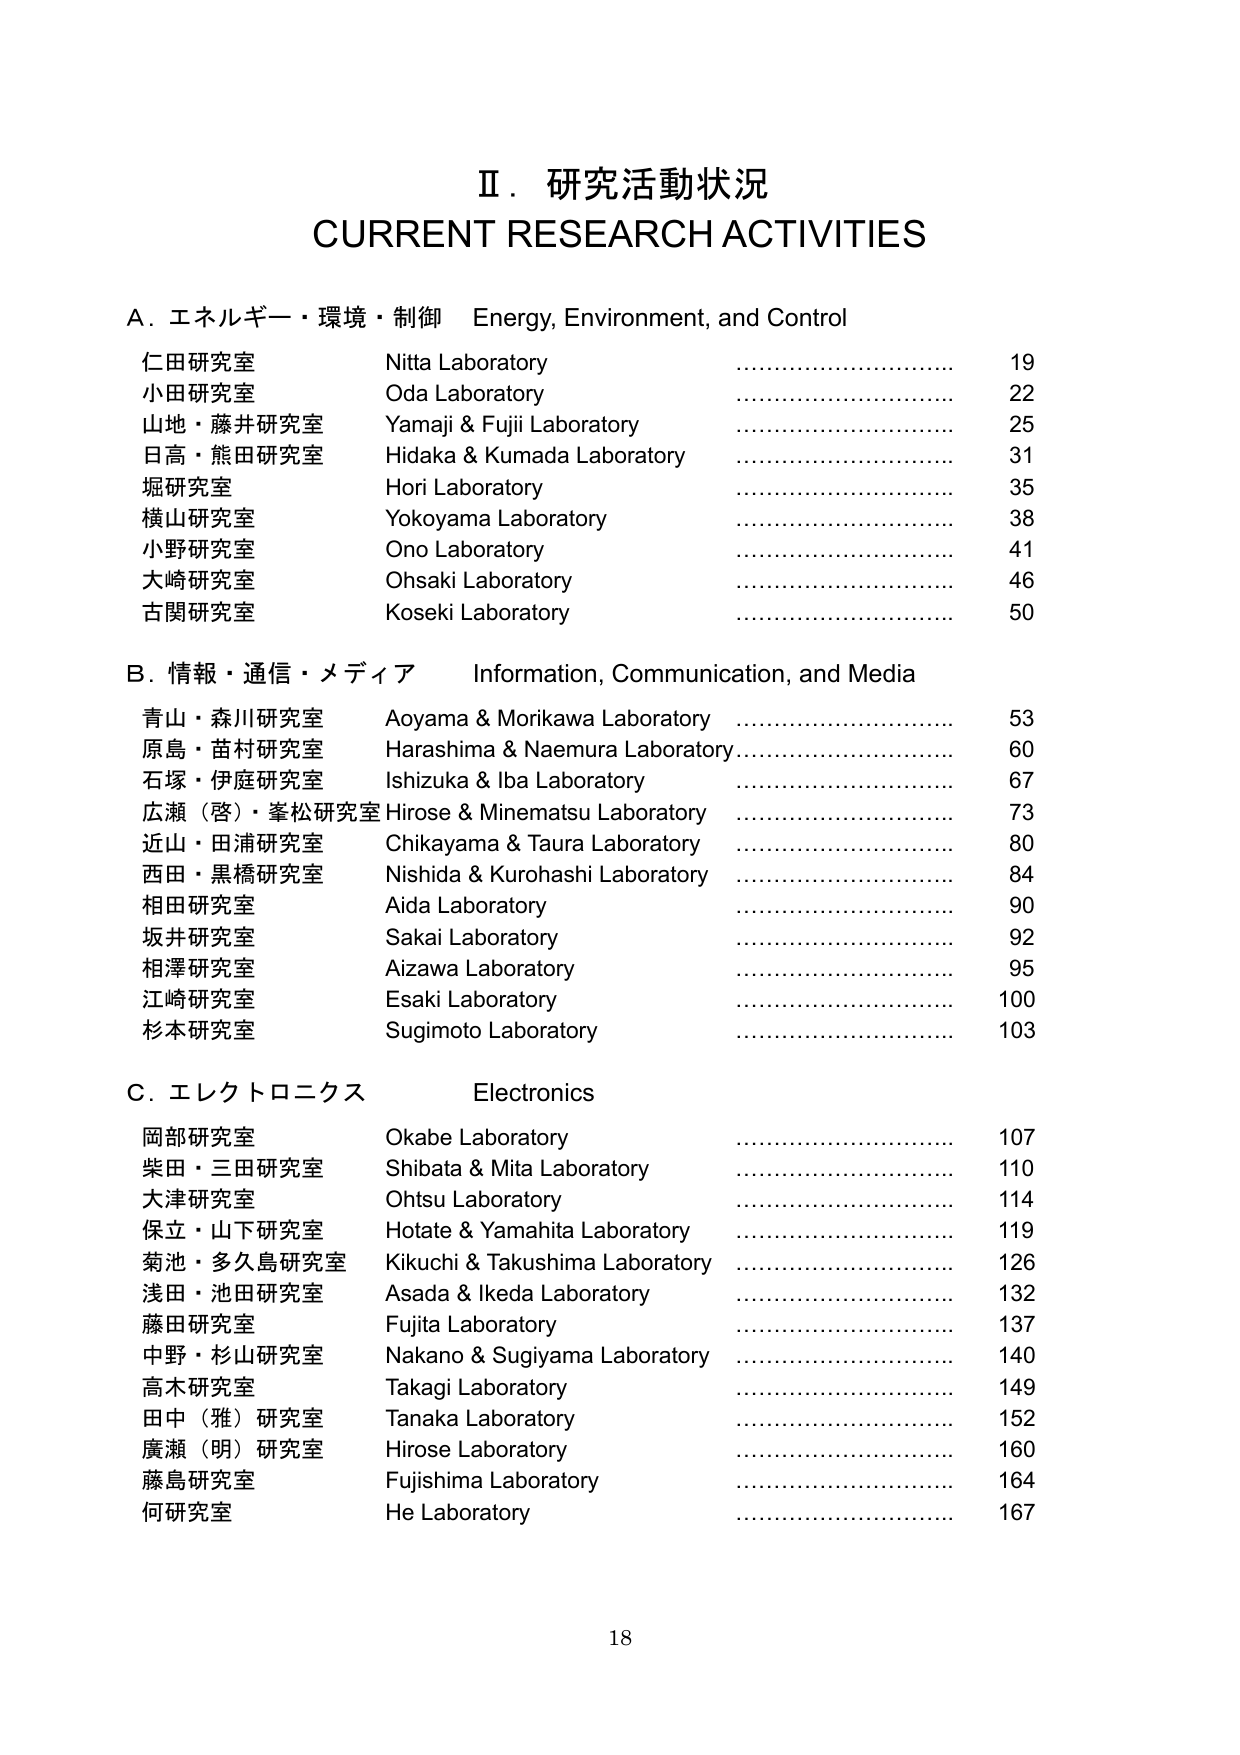 ダウンロード Pdf 1 4mb 東京大学工学部 電子情報工学科 電気電子